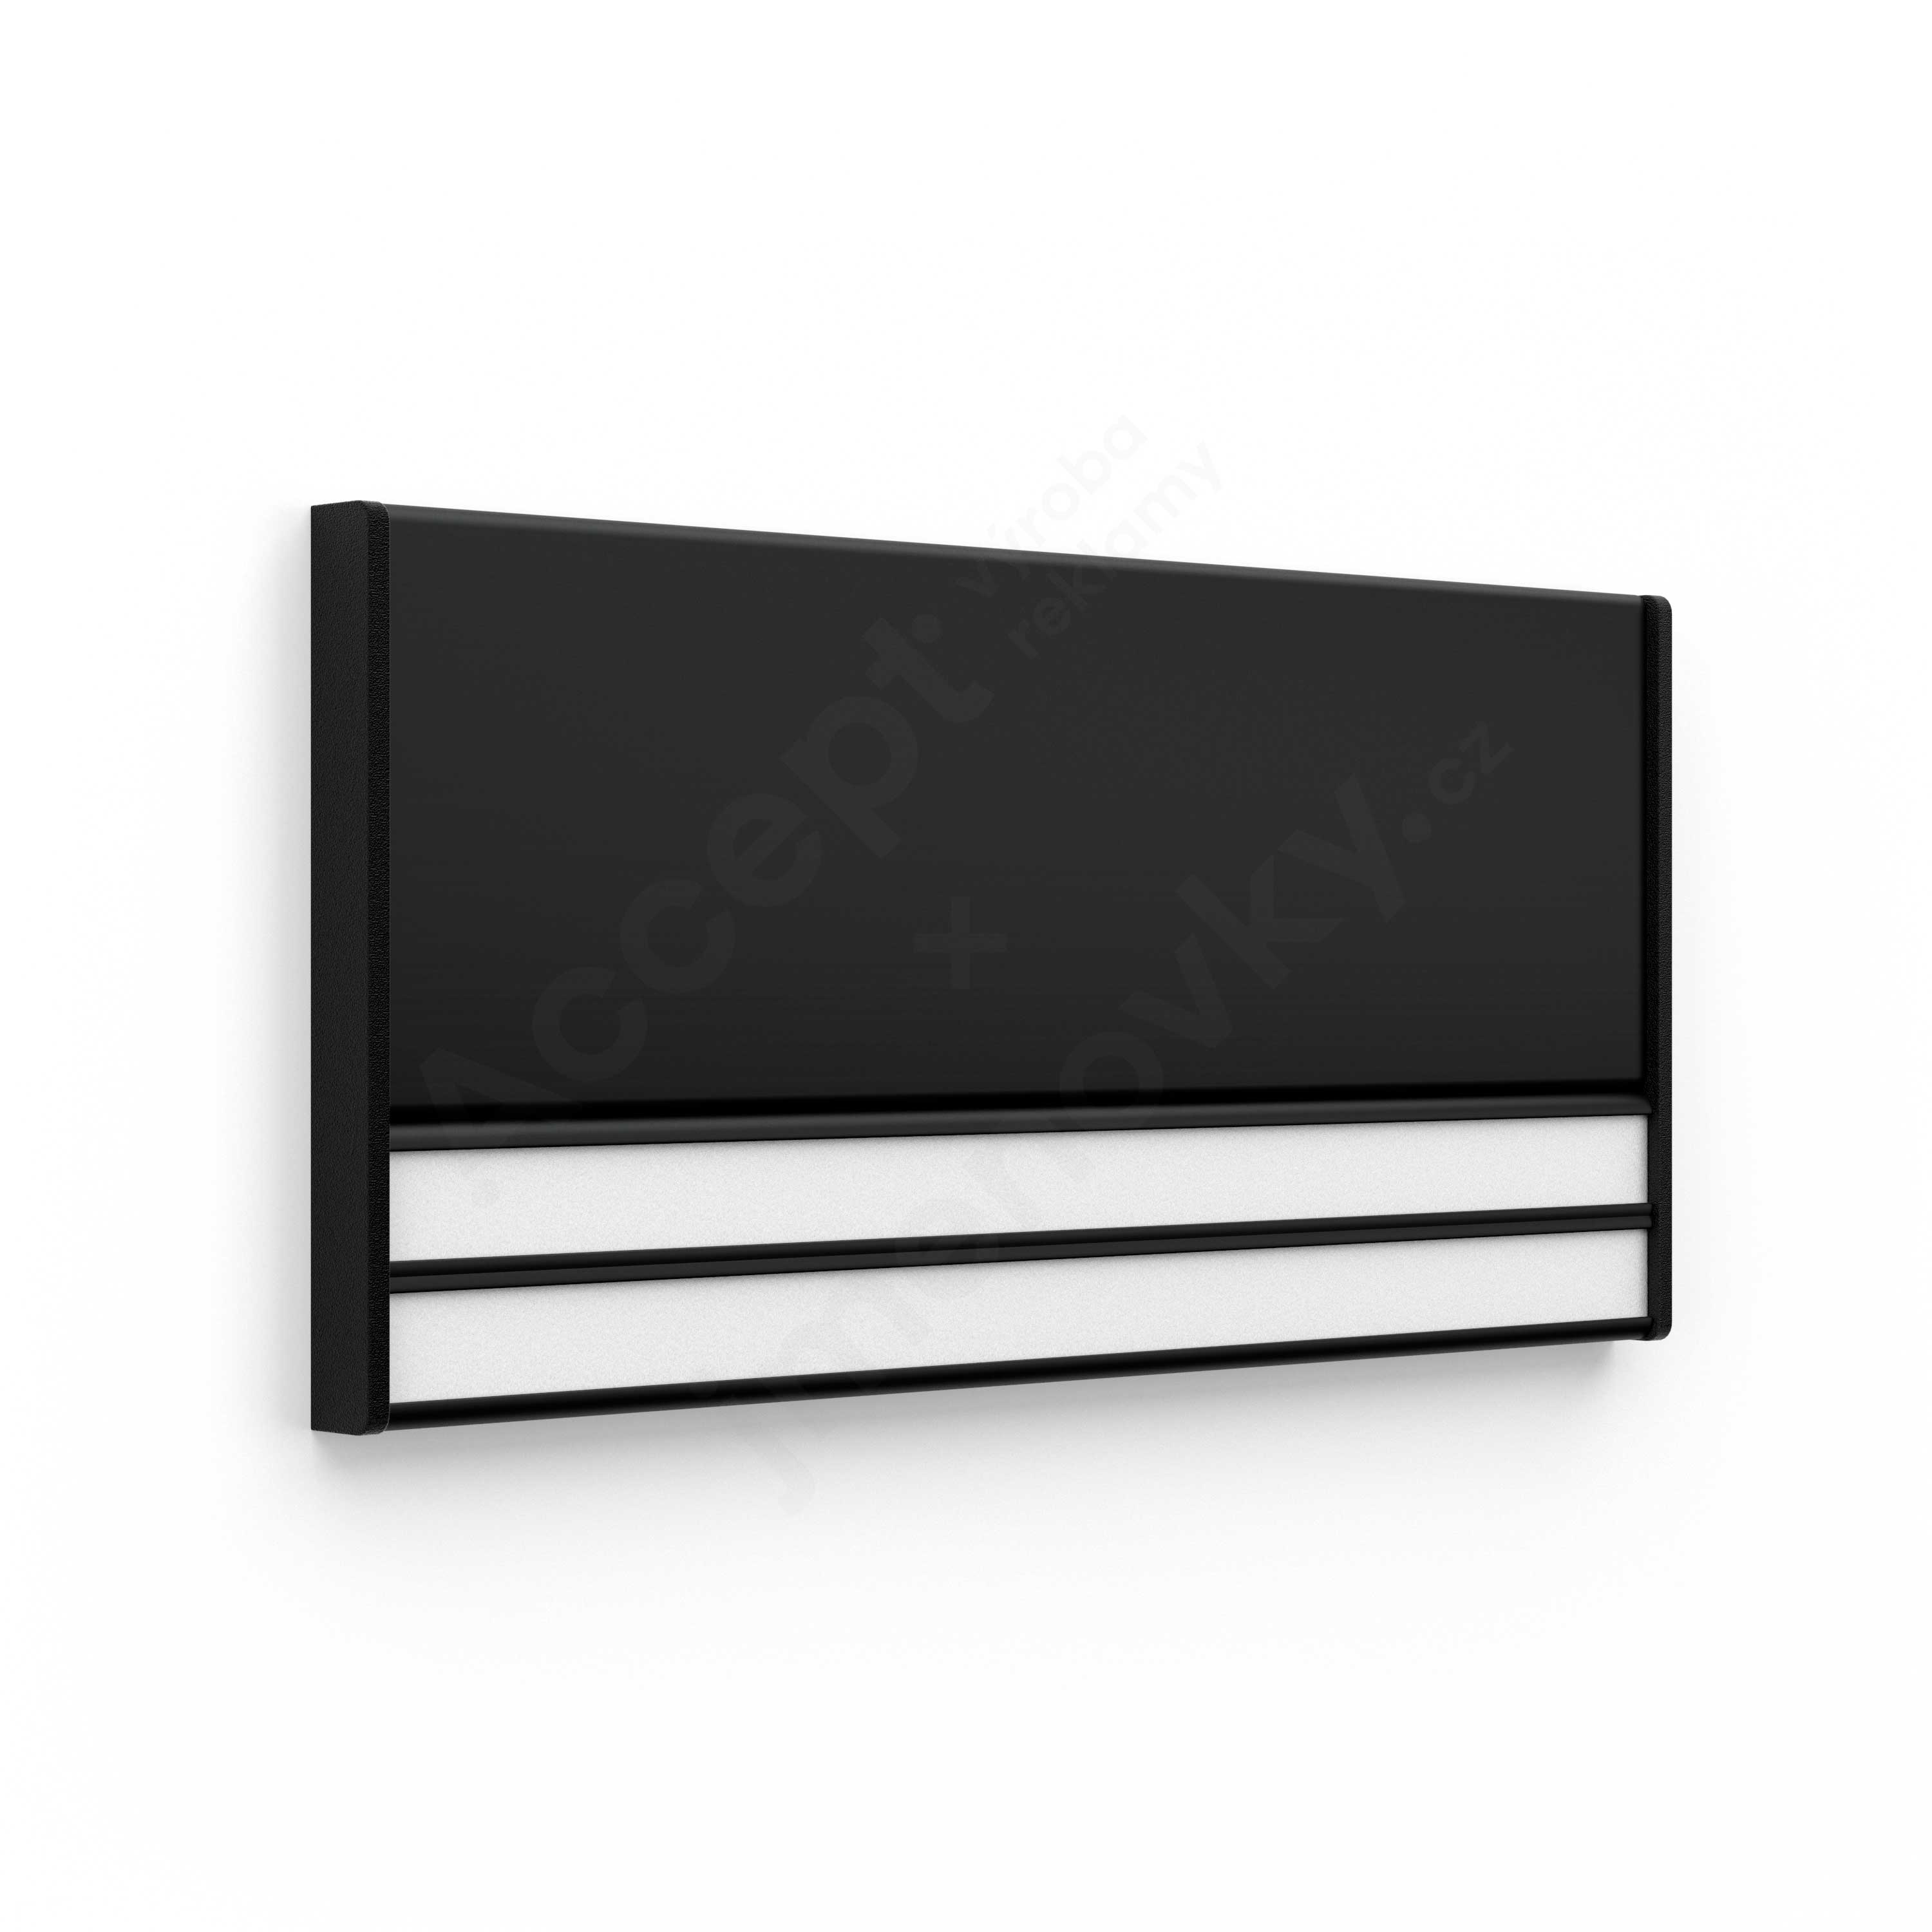 Dveřní tabulka ACS černá (kombinovaný systém, 187 x 93 mm)